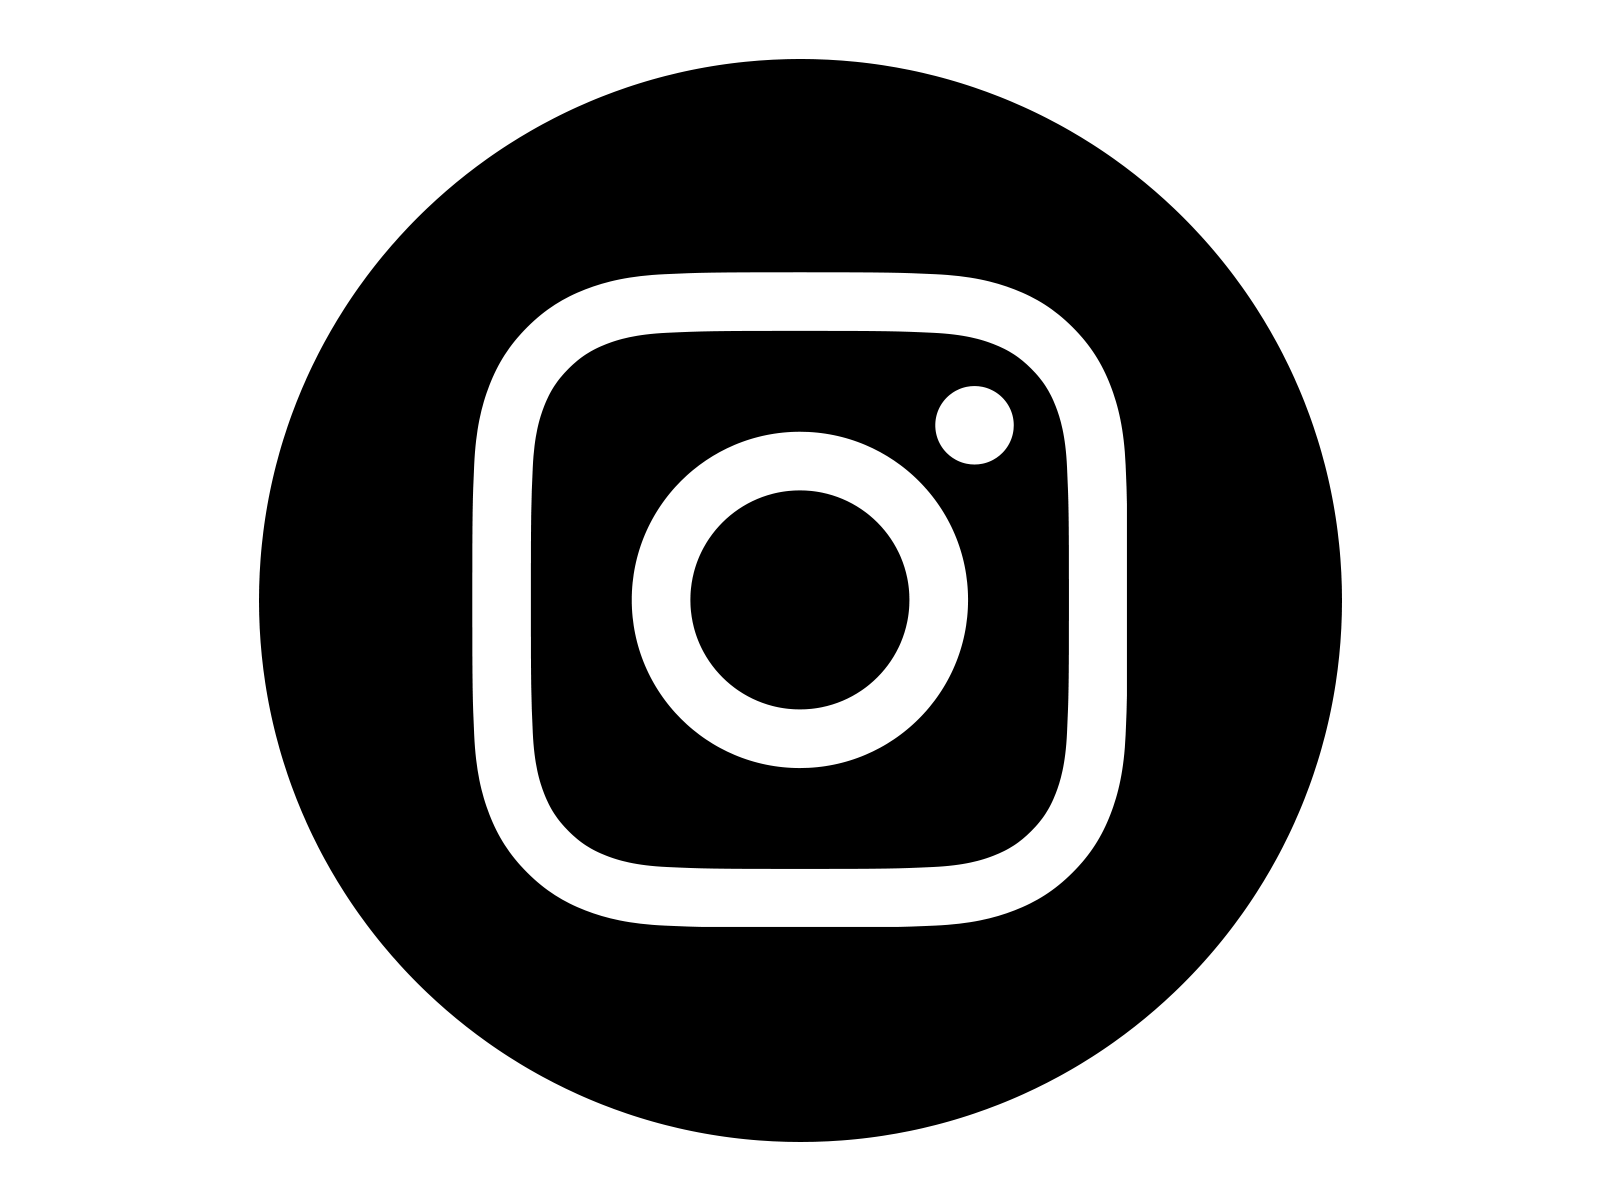 Instagram photo camera logo outline - Free logo icons